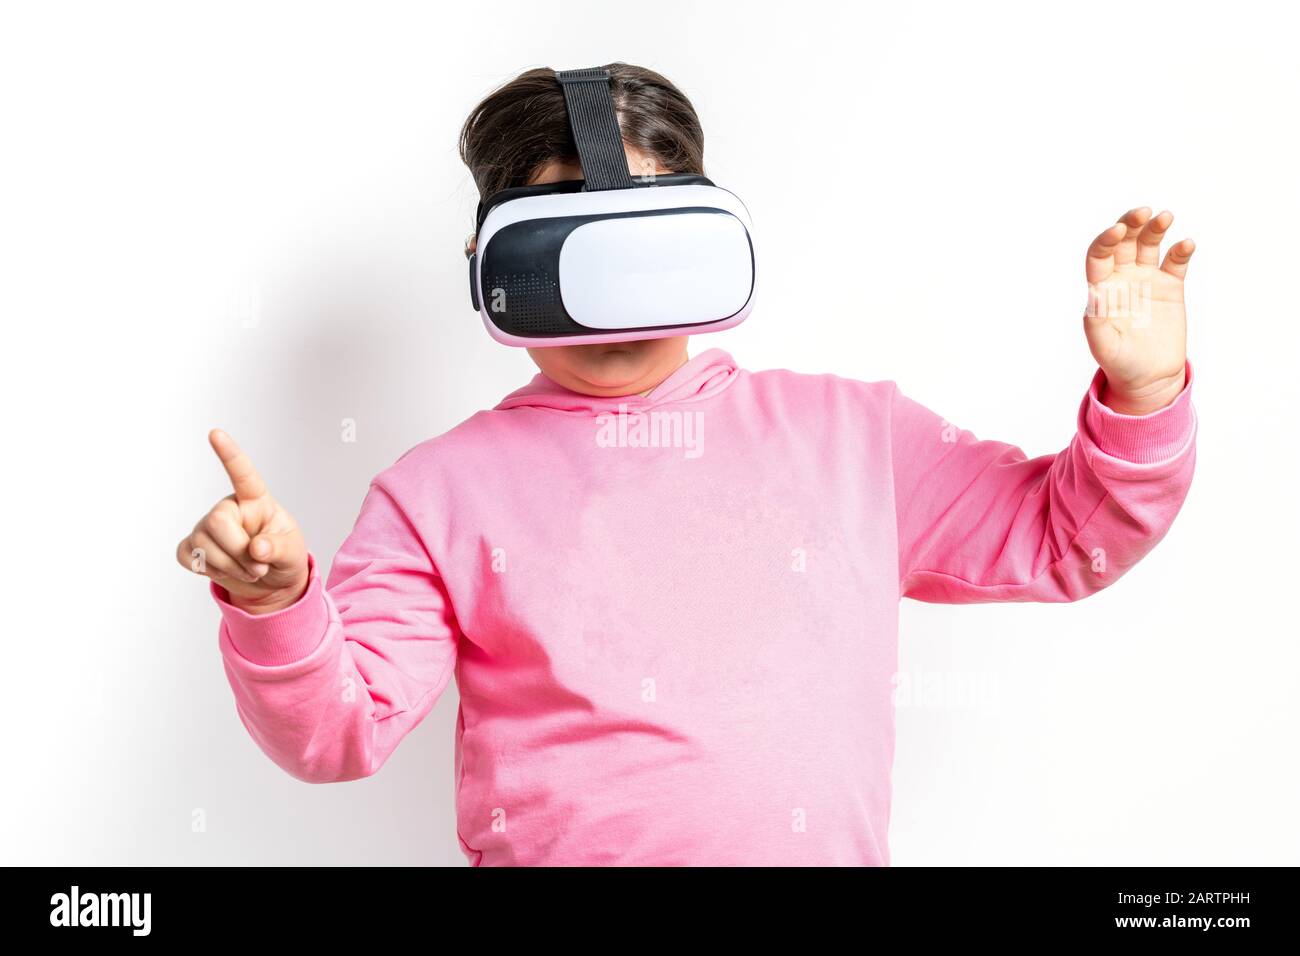 Mädchen mit pinkfarbenem Sweatshirt und Virtual Reality Brille auf weißem Hintergrund Stockfoto